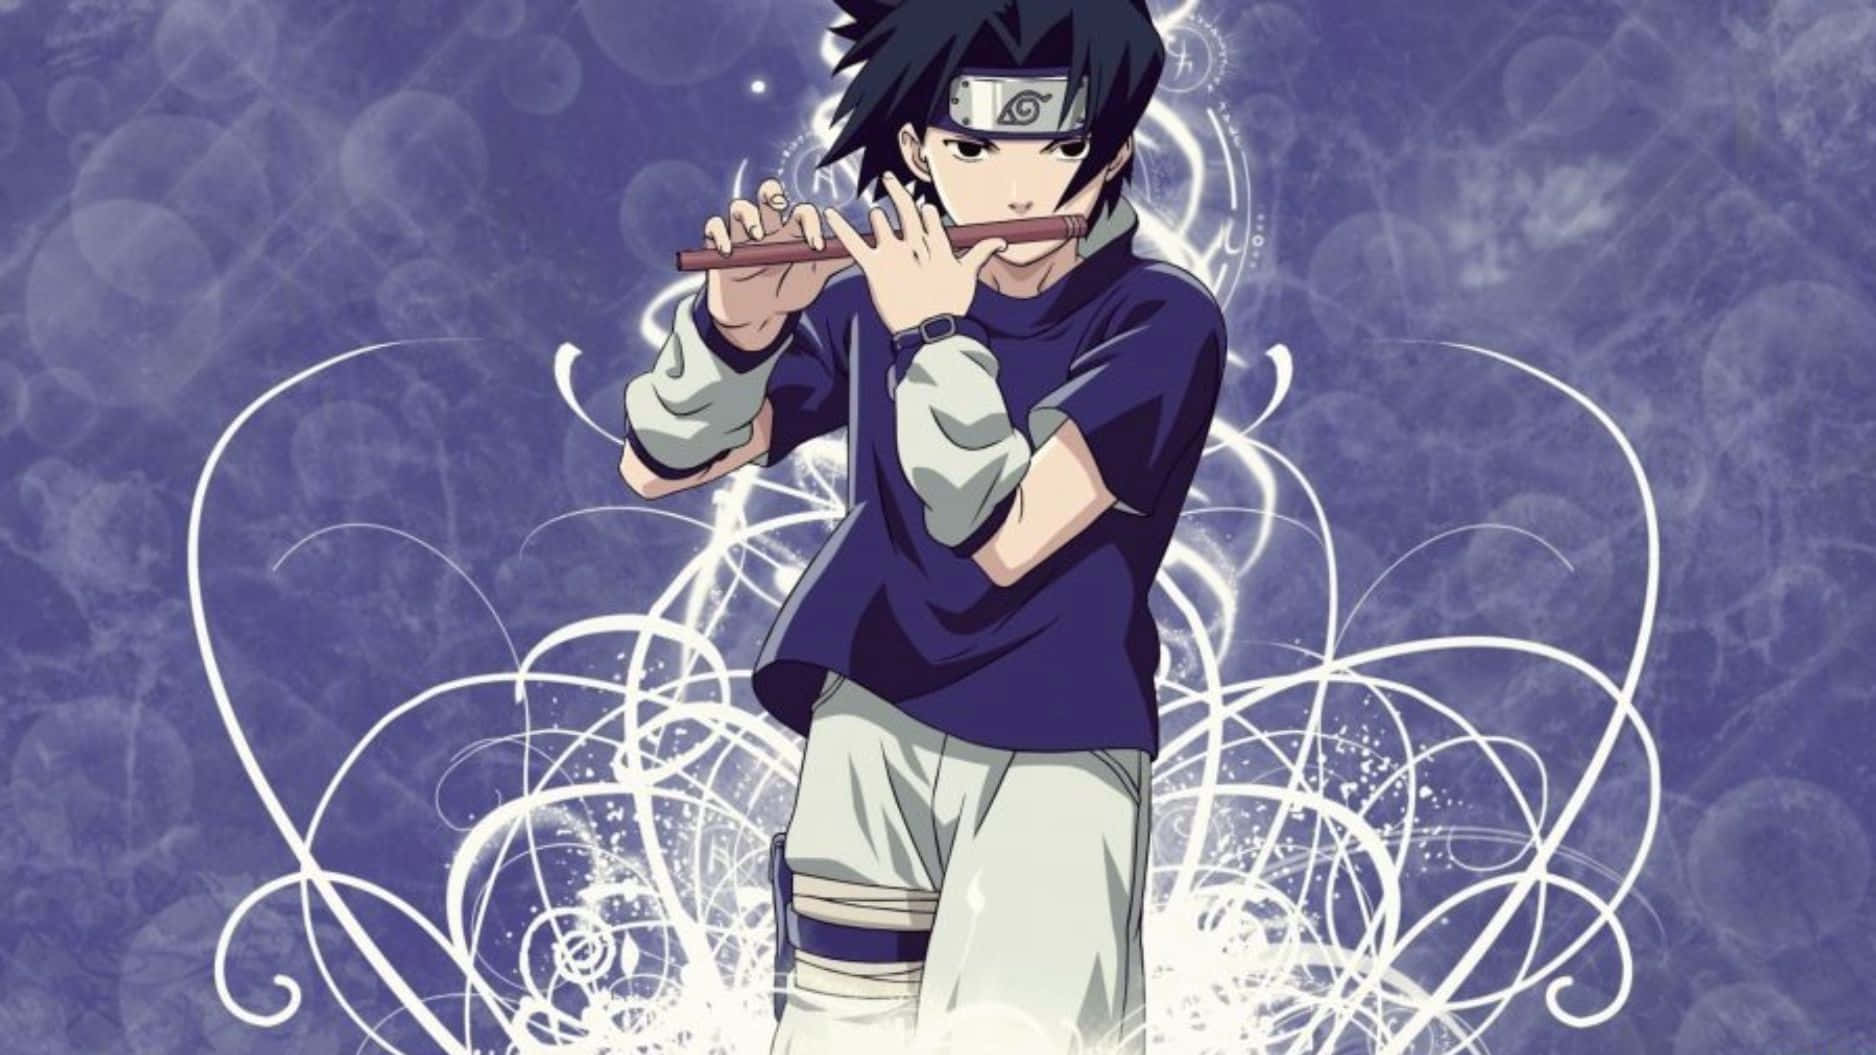 Limitierteausgabe Der Sasuke-figur In Blau Wallpaper